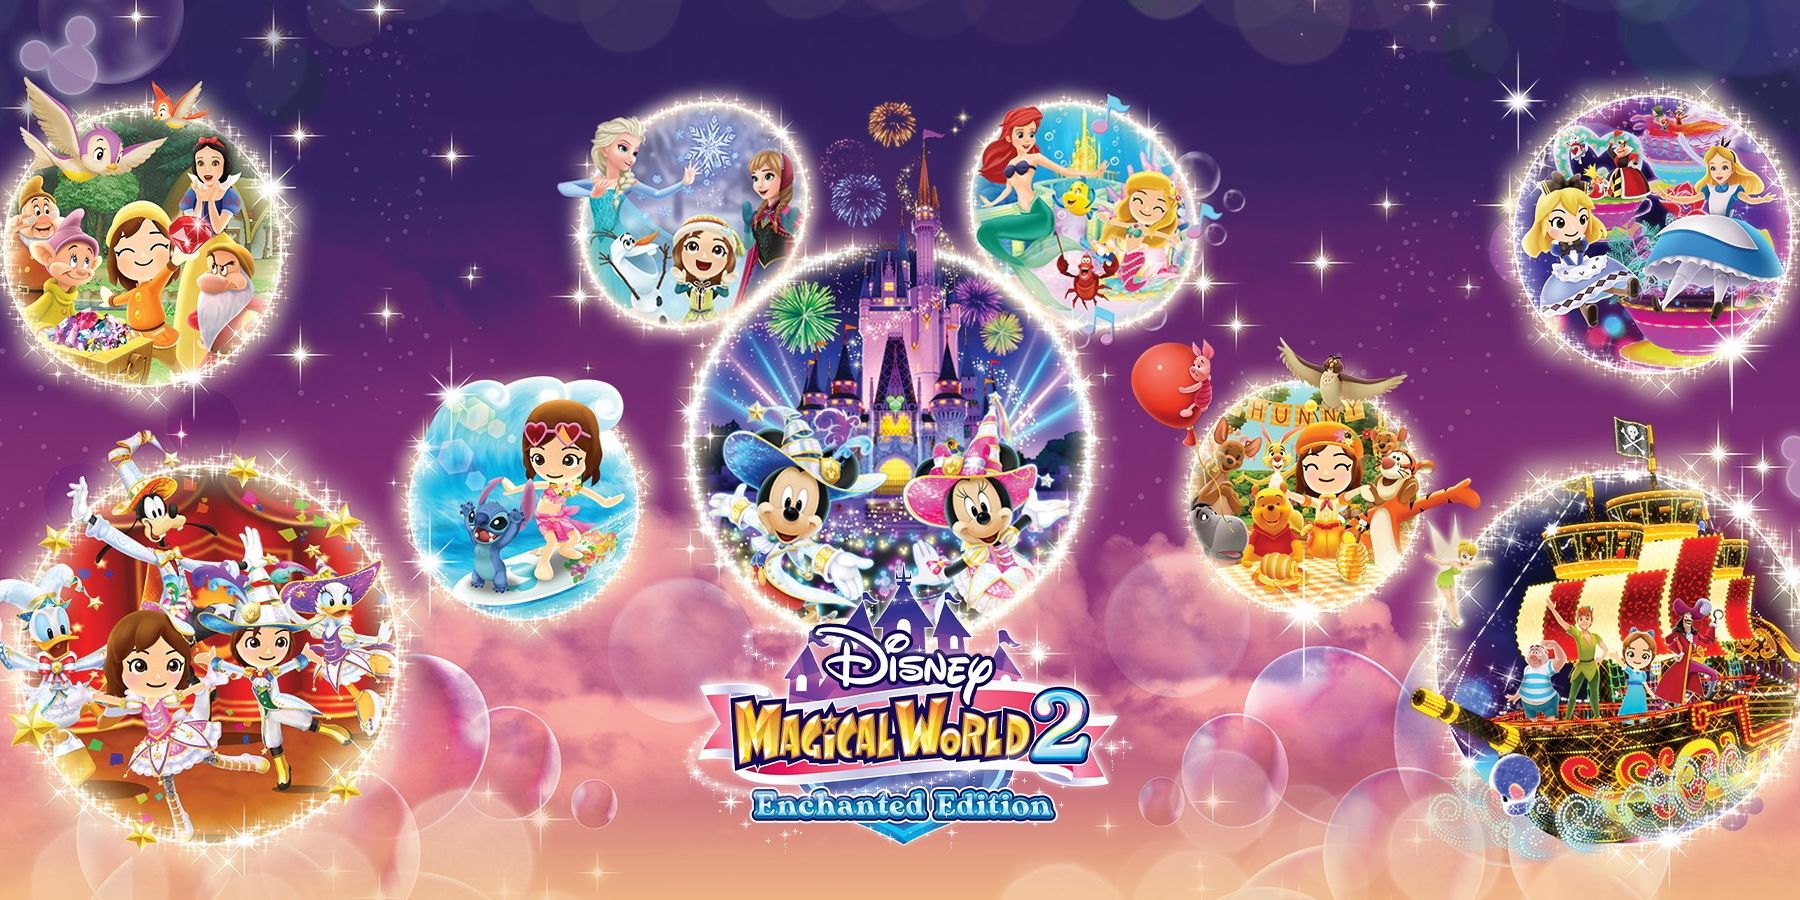 Disney Magical World 2: Enchanted Edition kommer til bytte i år